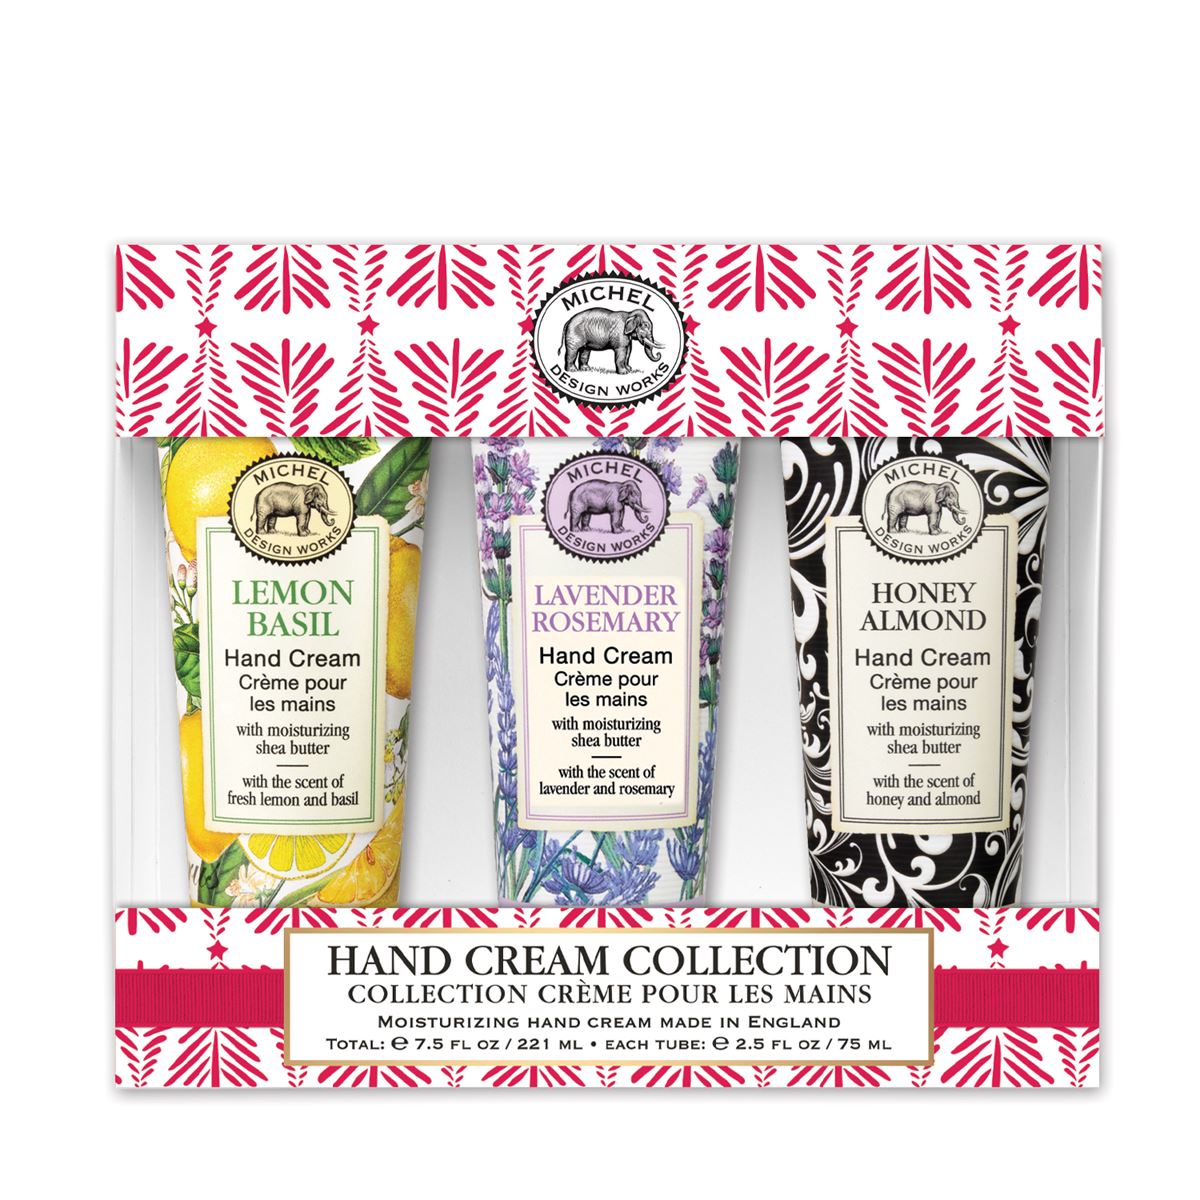 Large Hand Cream Gift Set - Lemon Basil, Lavender Rosemary, Honey Almond